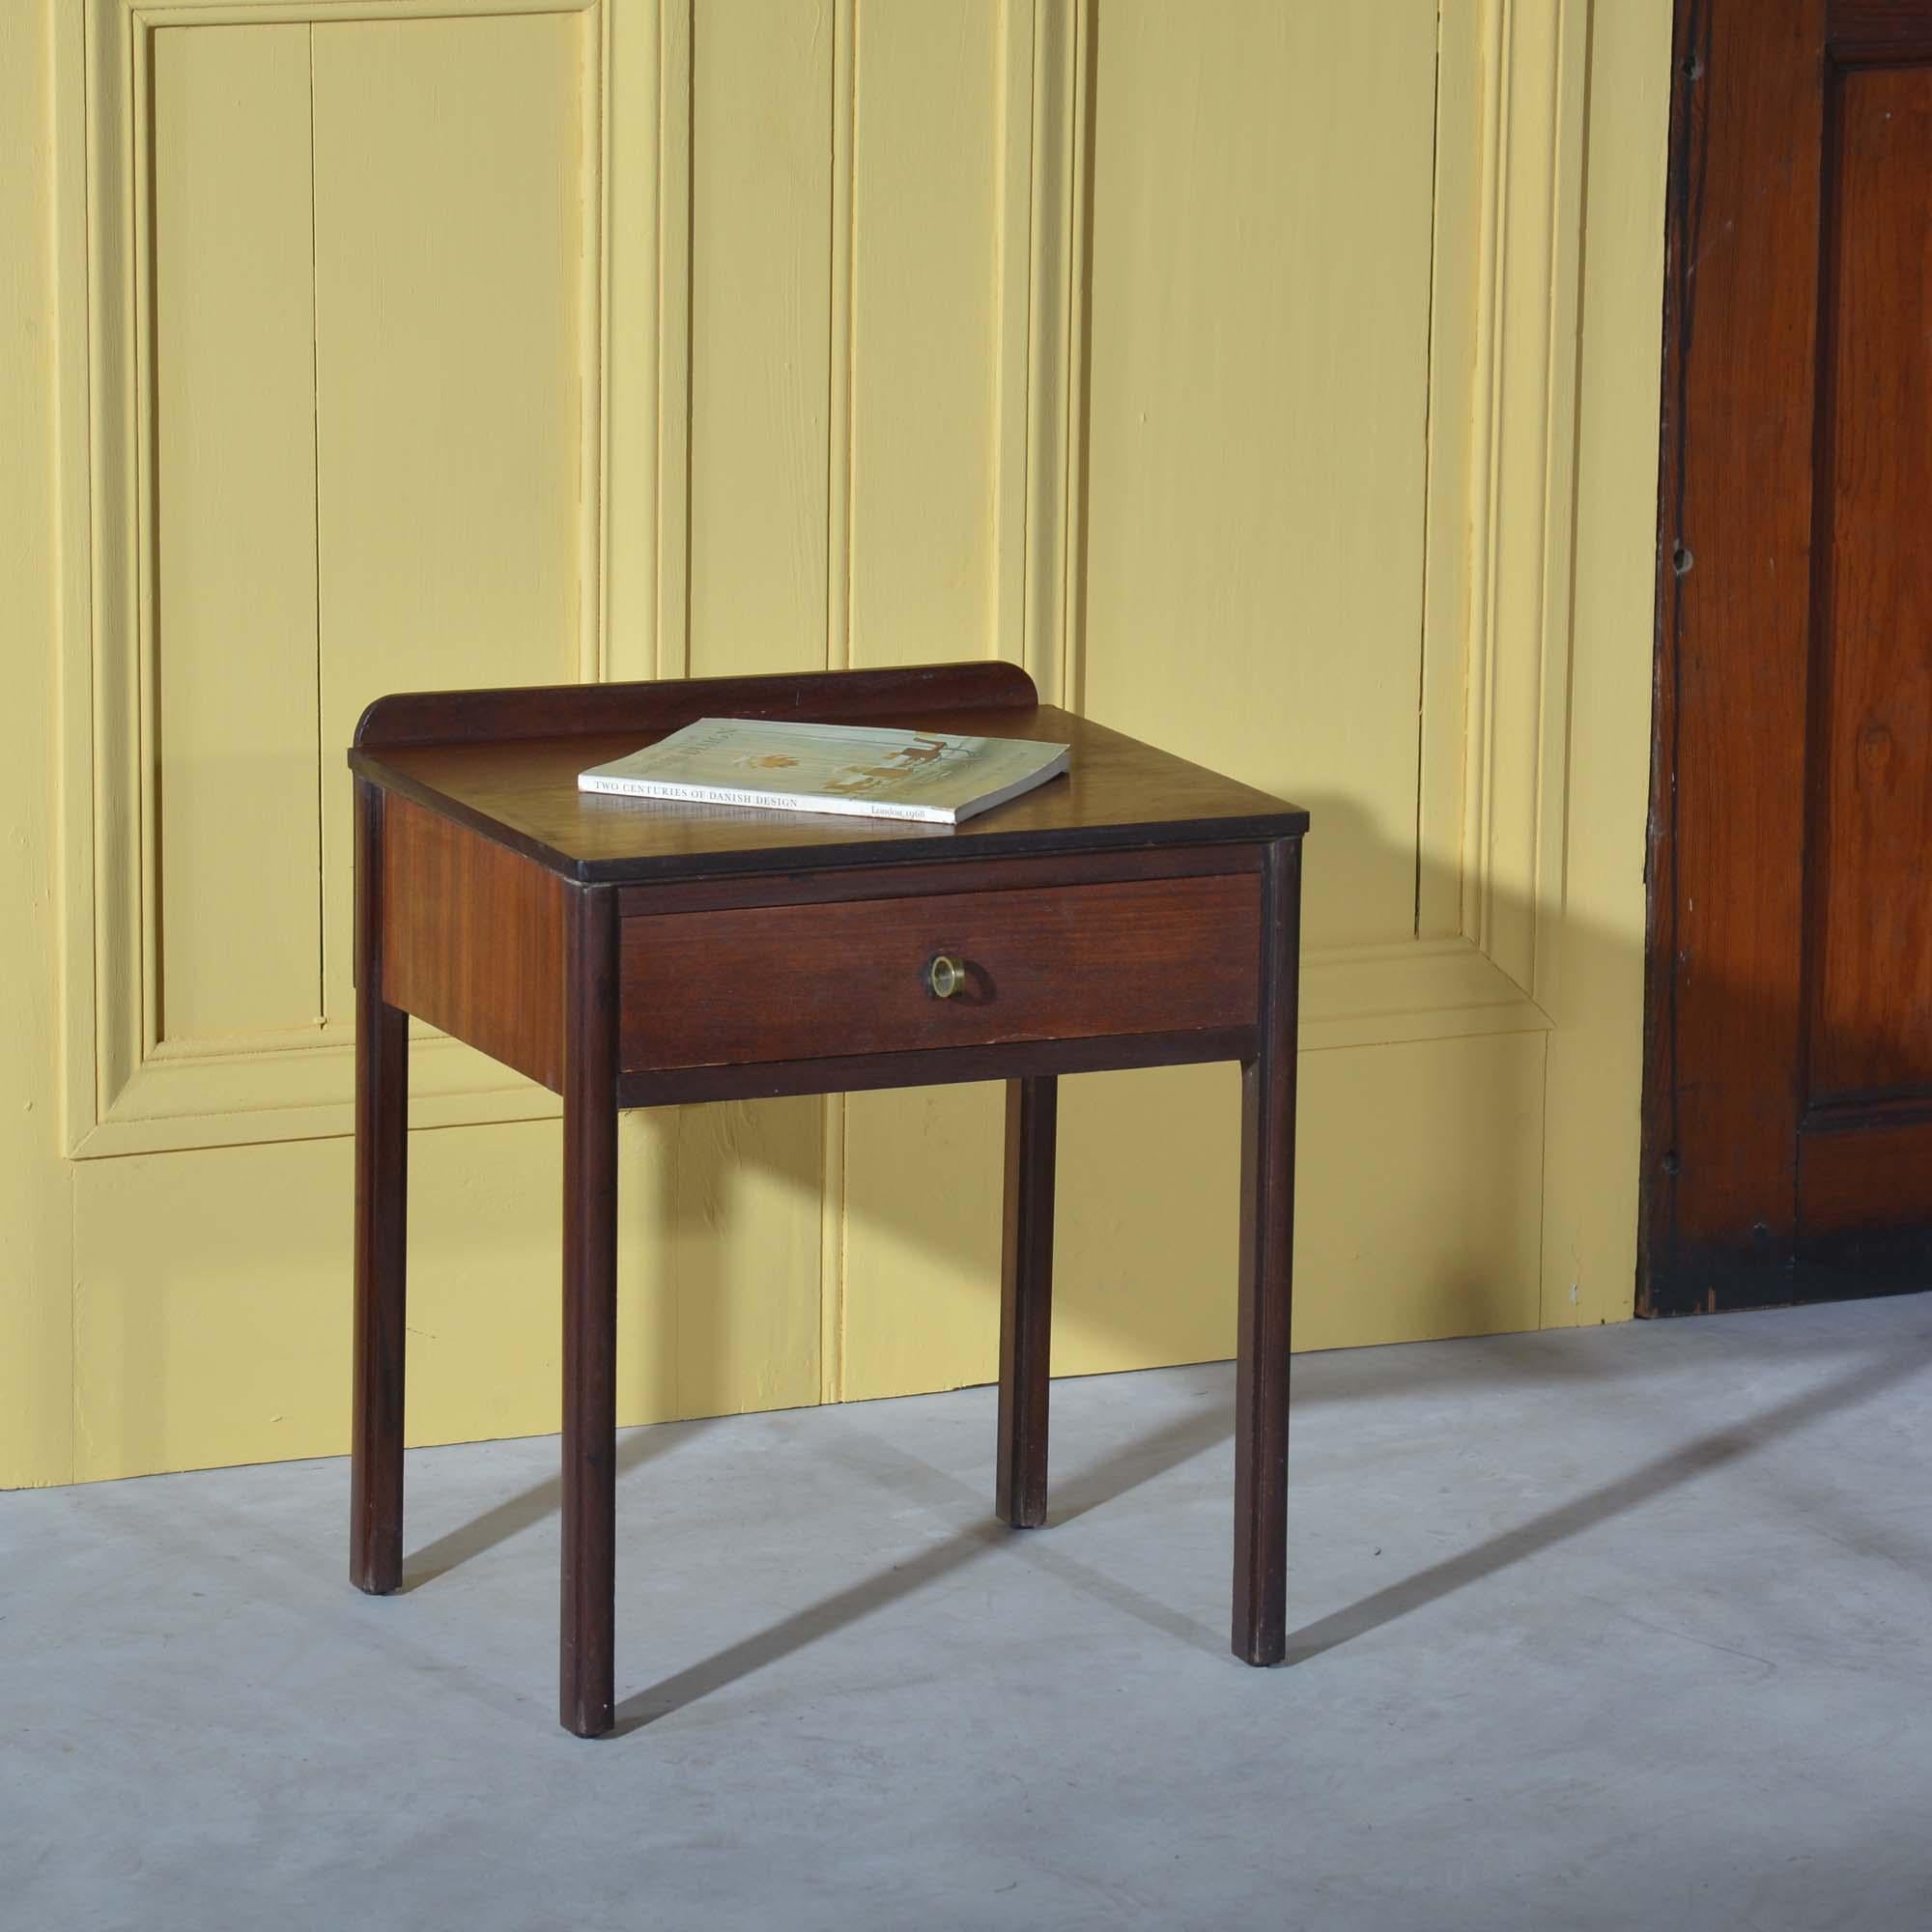 Nachttisch aus Teakholz im dänischen Design der Jahrhundertmitte
Nachttisch aus Teakholz mit einer Schublade und markantem Messingrohrgriff. Wiederverkauft bei Heals & Co.
Dänisch, um 1960